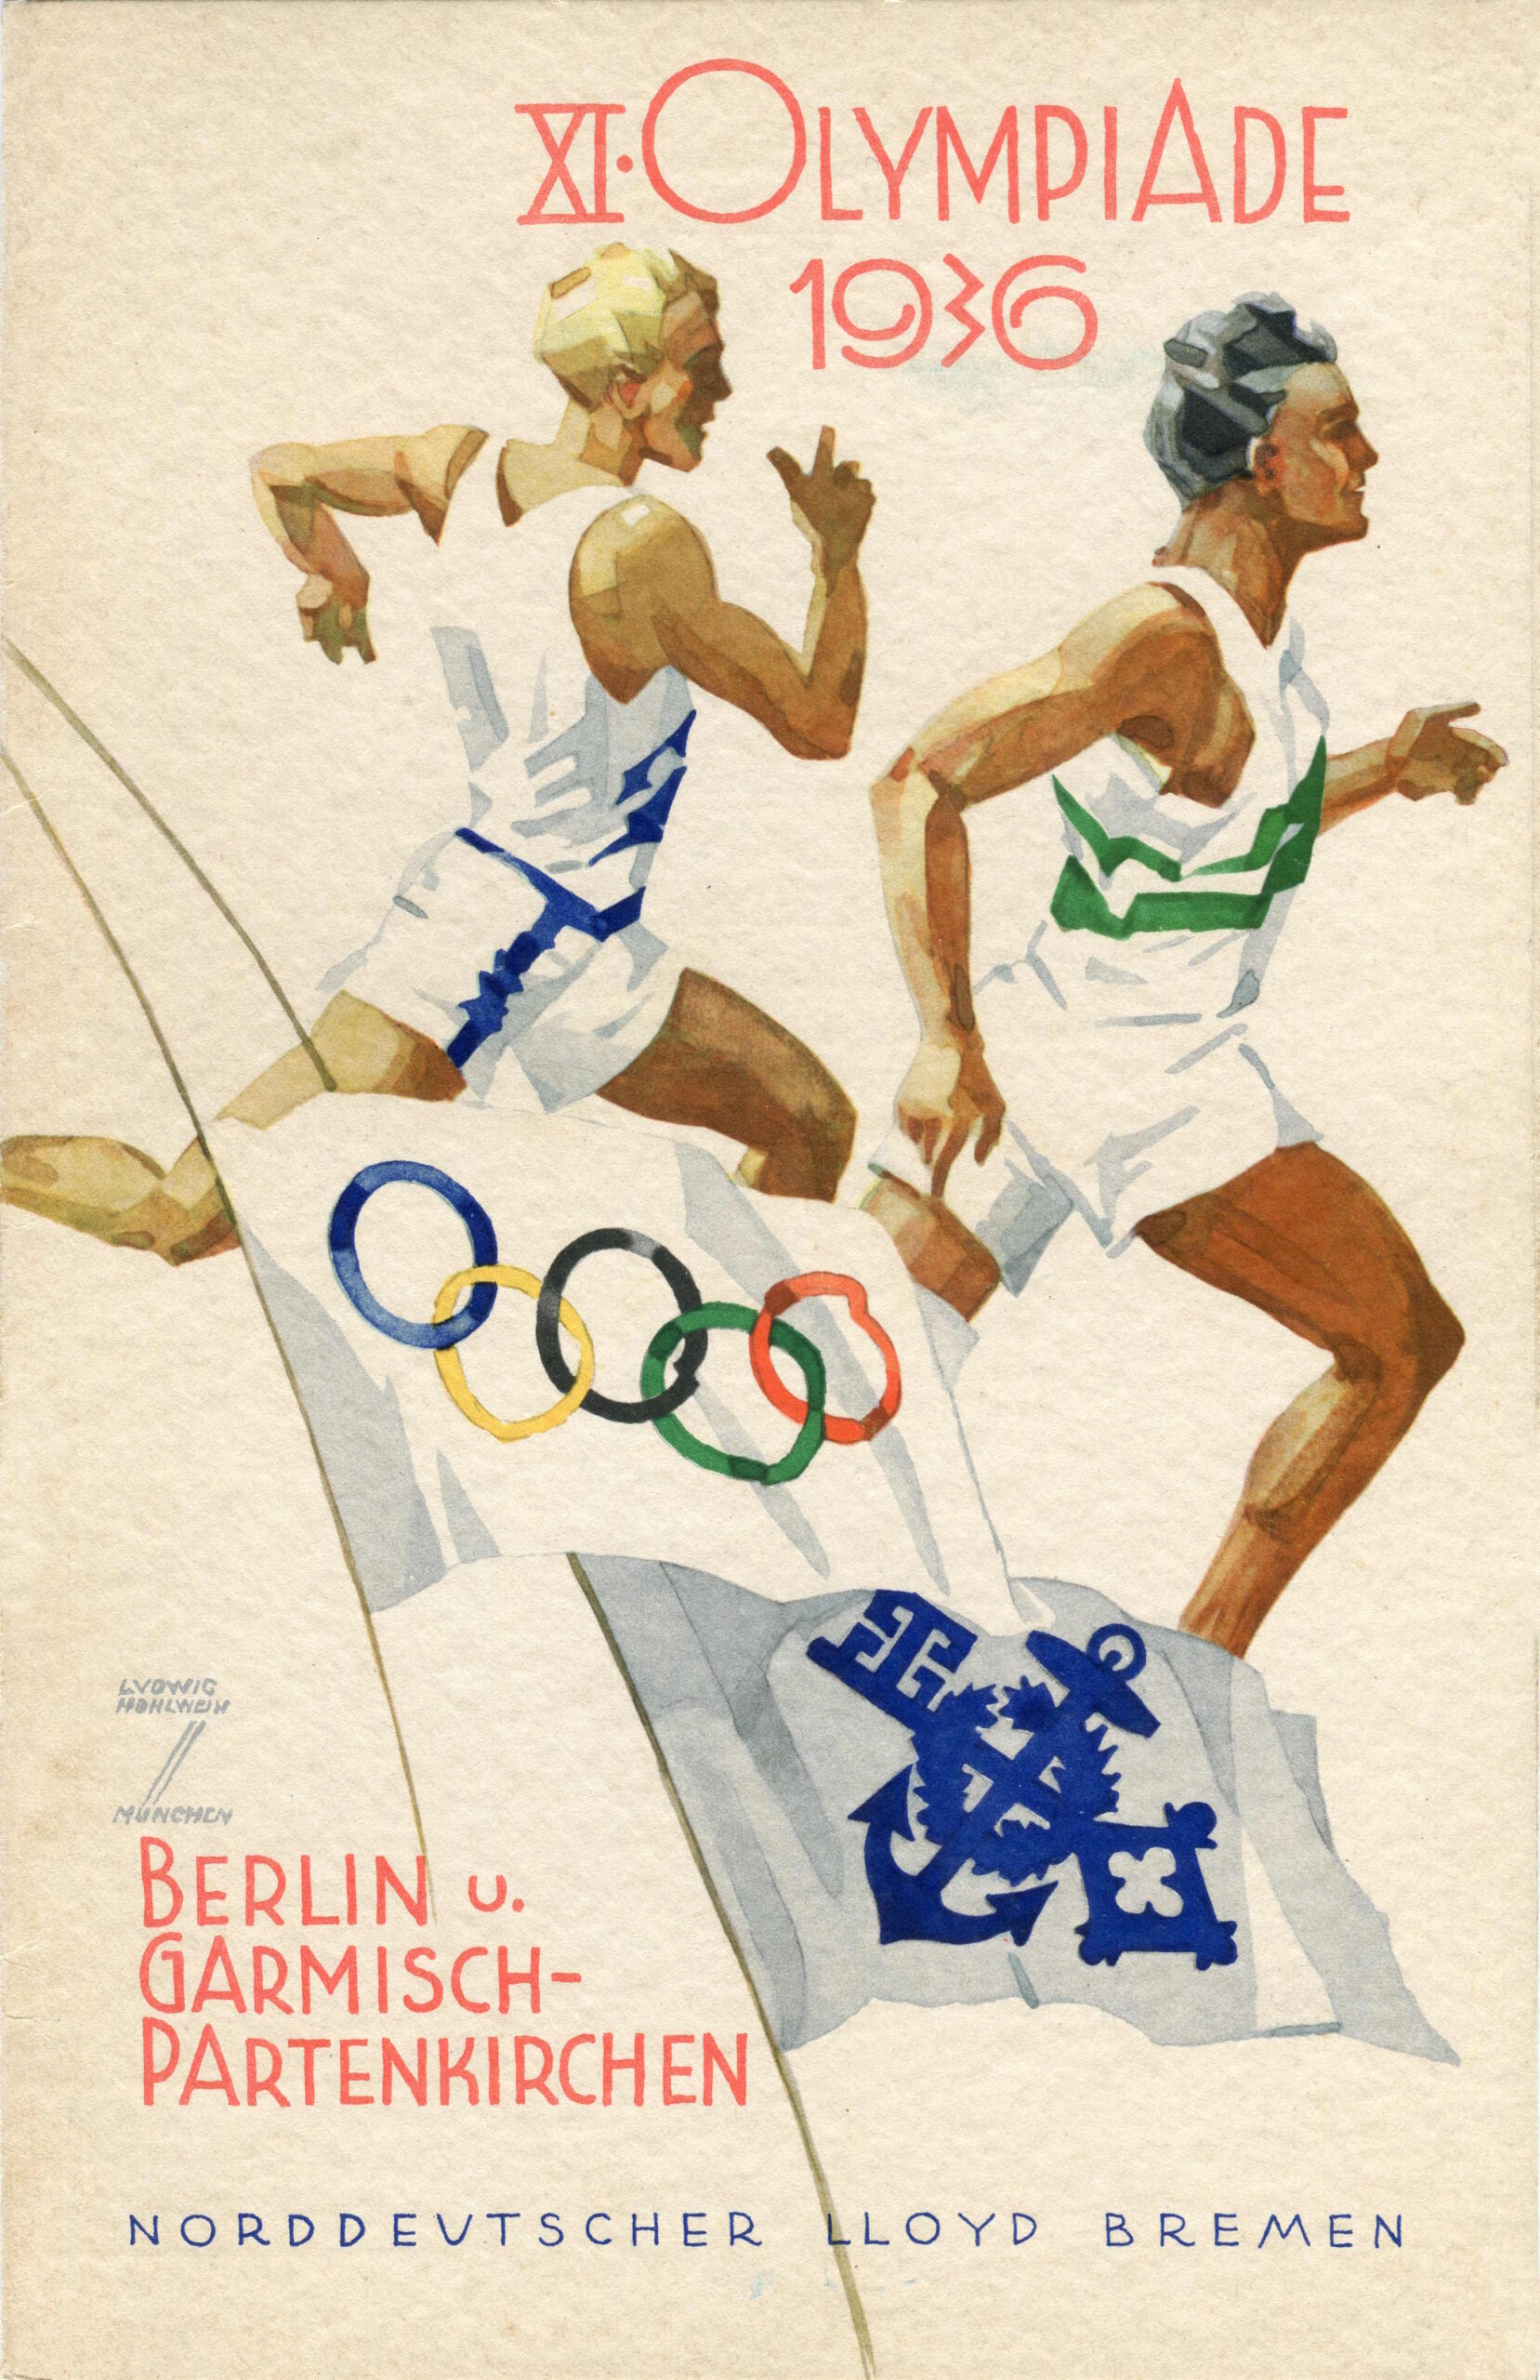 S.S. Stuttgart 12 Agosto 1936, menu pubblicitario dei Giochi Olimpici di Berlino